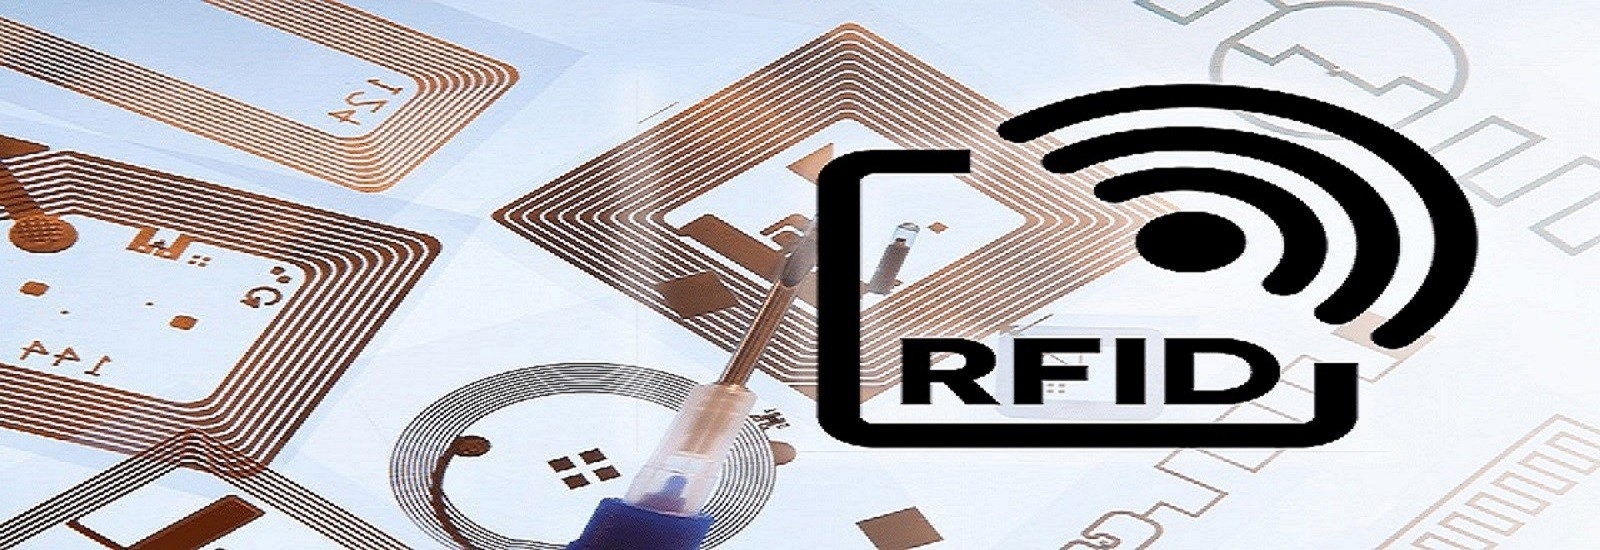 Etiquetas de etiqueta RFID